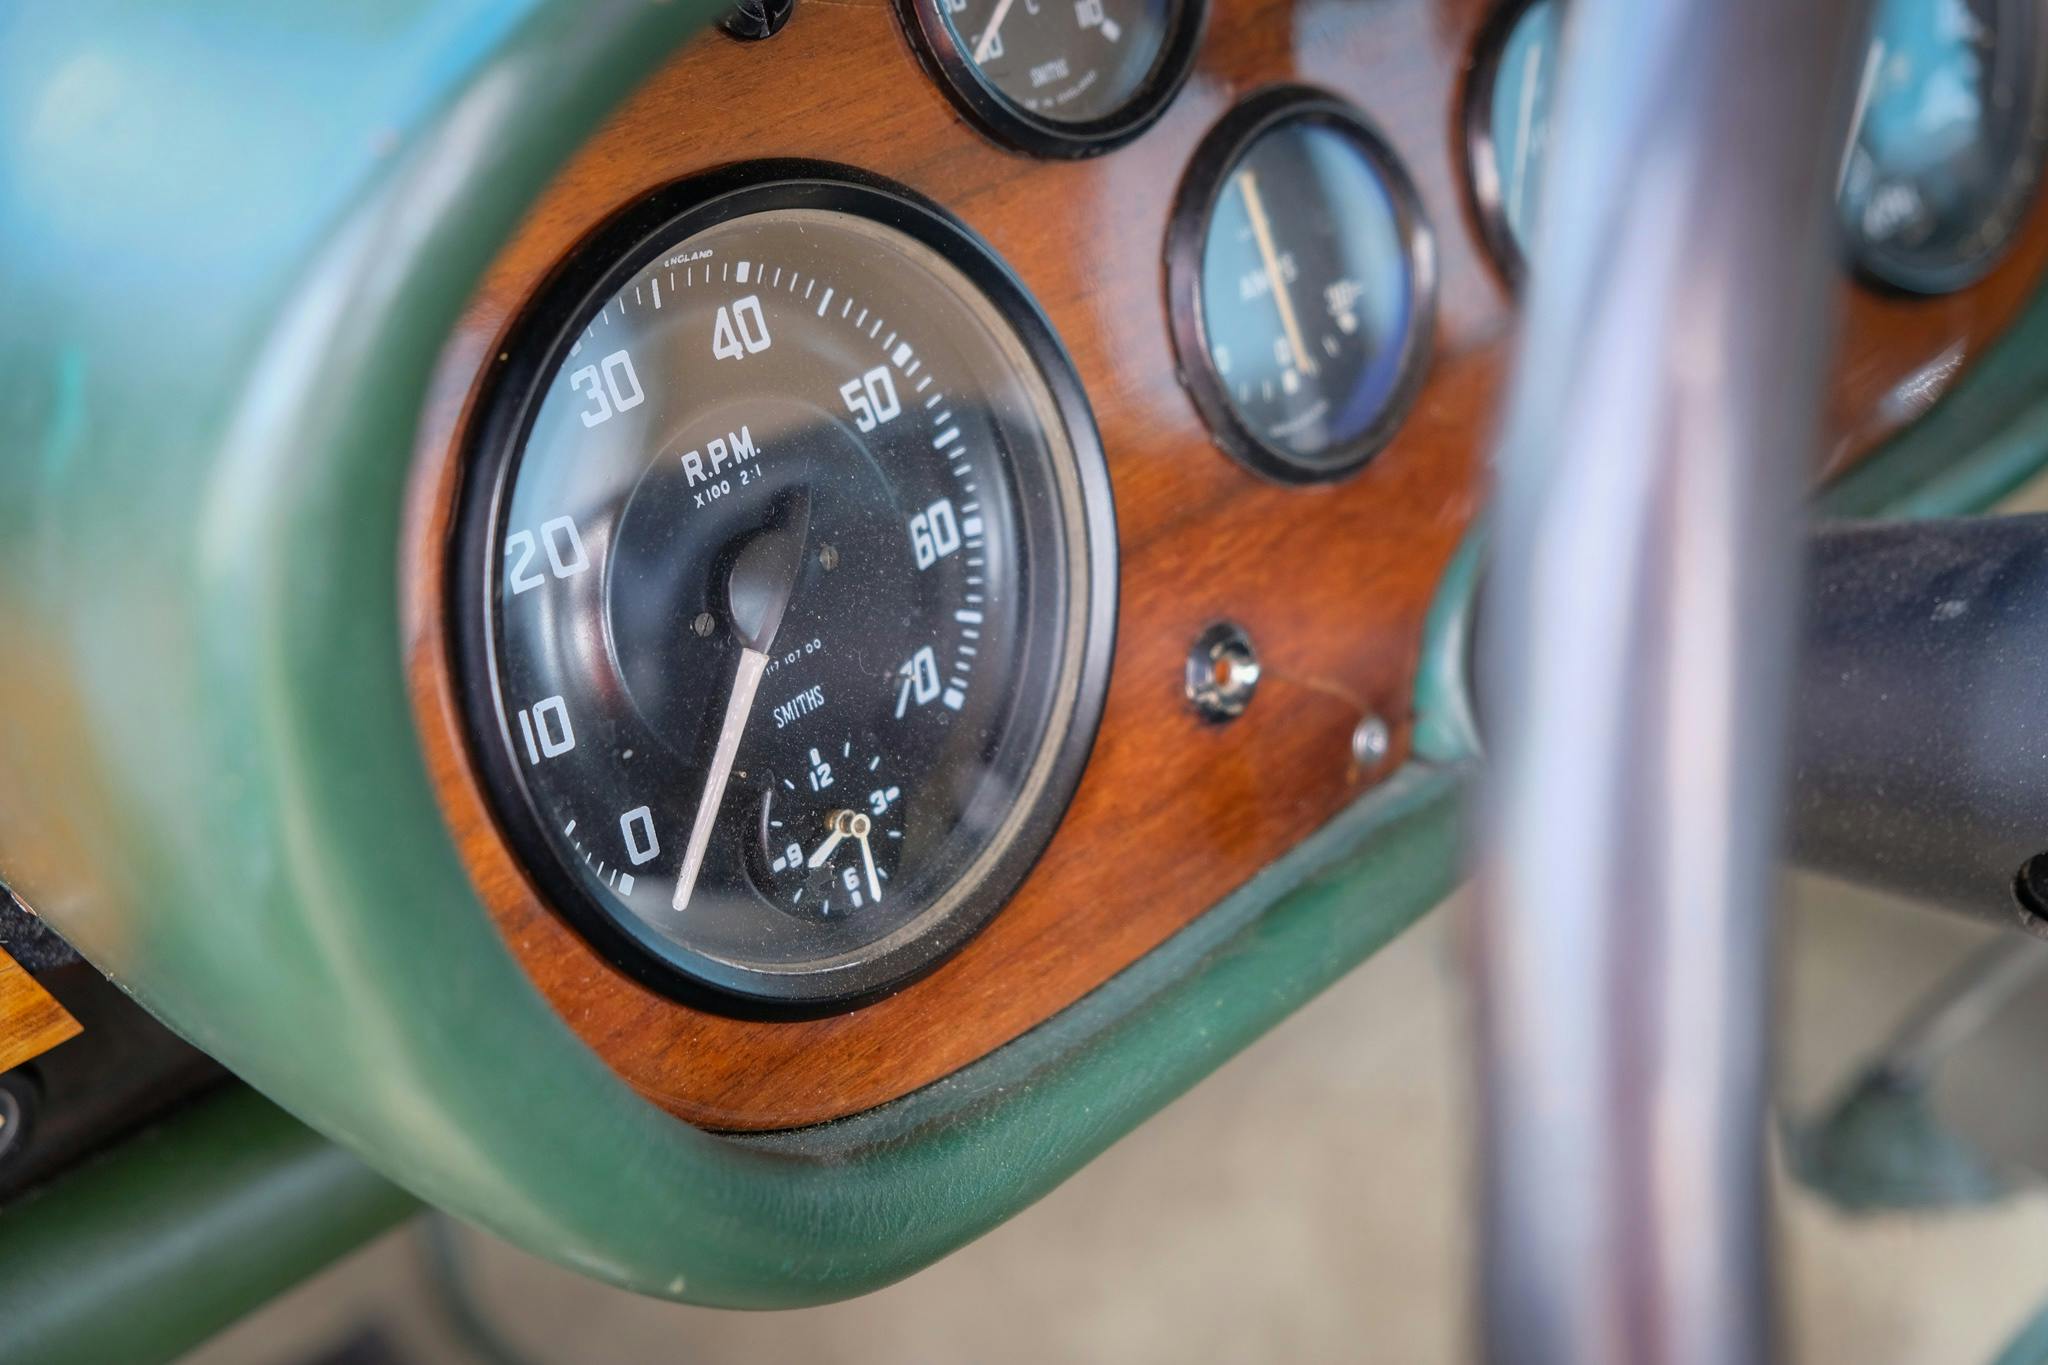 Bristol 404 RPM dash gauge